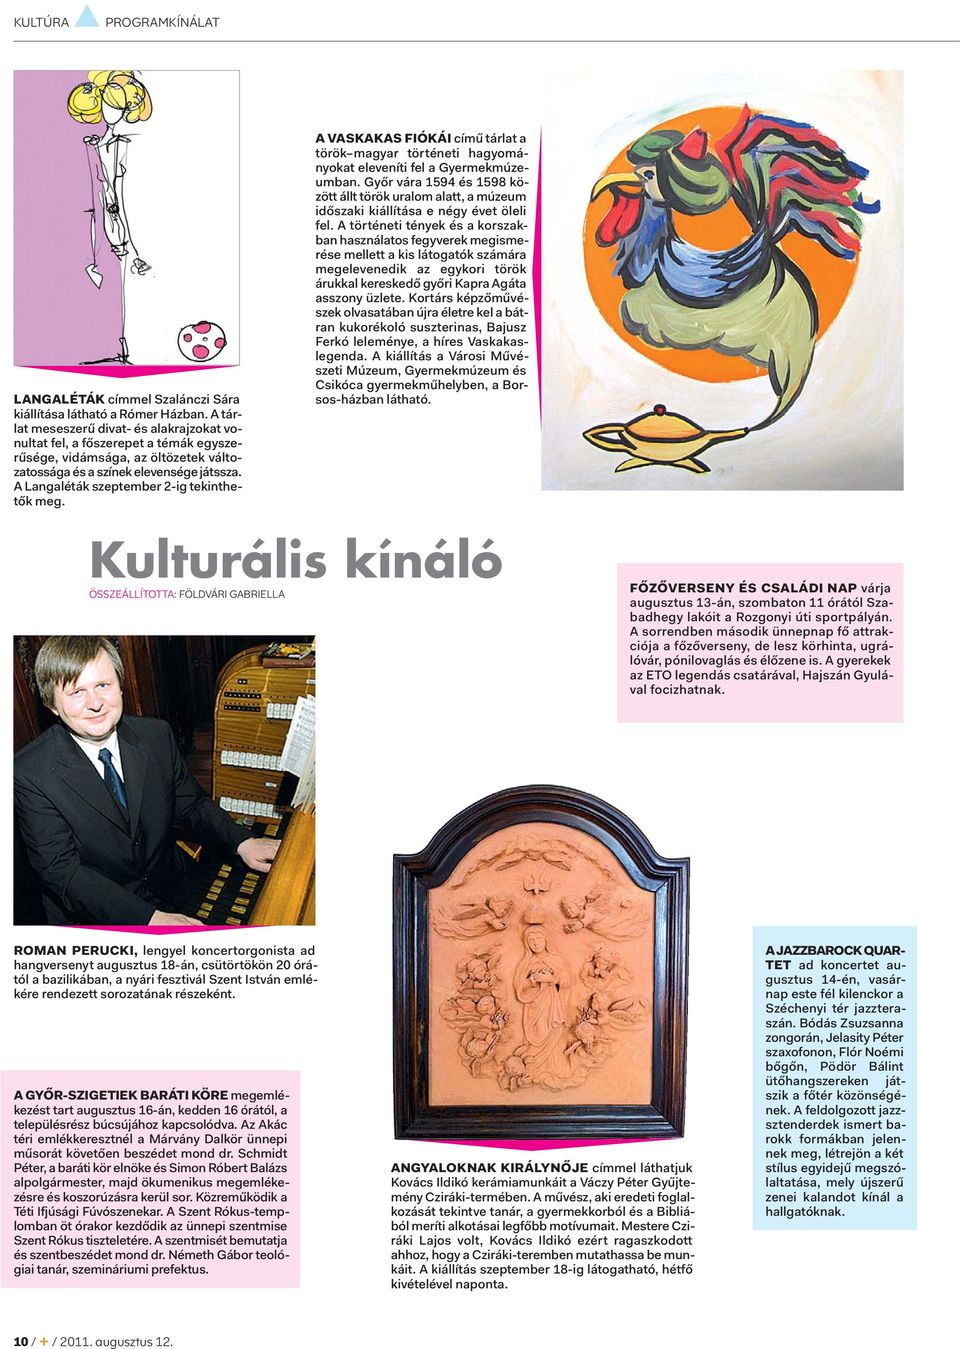 A Langaléták szeptember 2-ig tekinthetők meg. A VASKAKAS FIÓKÁI című tárlat a török magyar történeti hagyományokat eleveníti fel a Gyermekmúzeumban.